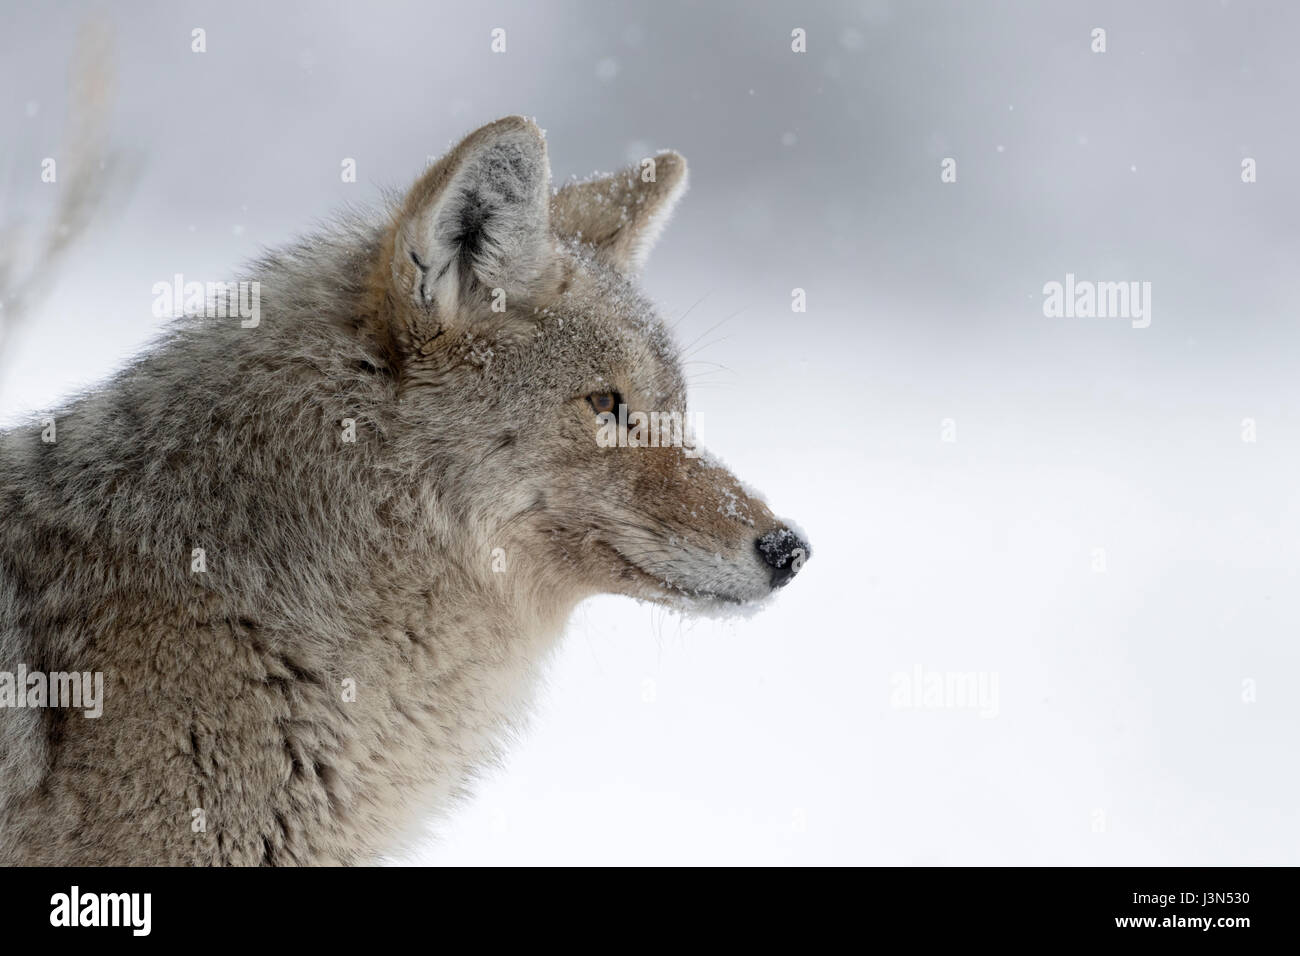 Le Coyote (Canis latrans), en hiver, la lumière de neige, neige, regardant concentré, peeking, chasse, close-up détaillé, headshot, Yellowstone NP, USA. Banque D'Images